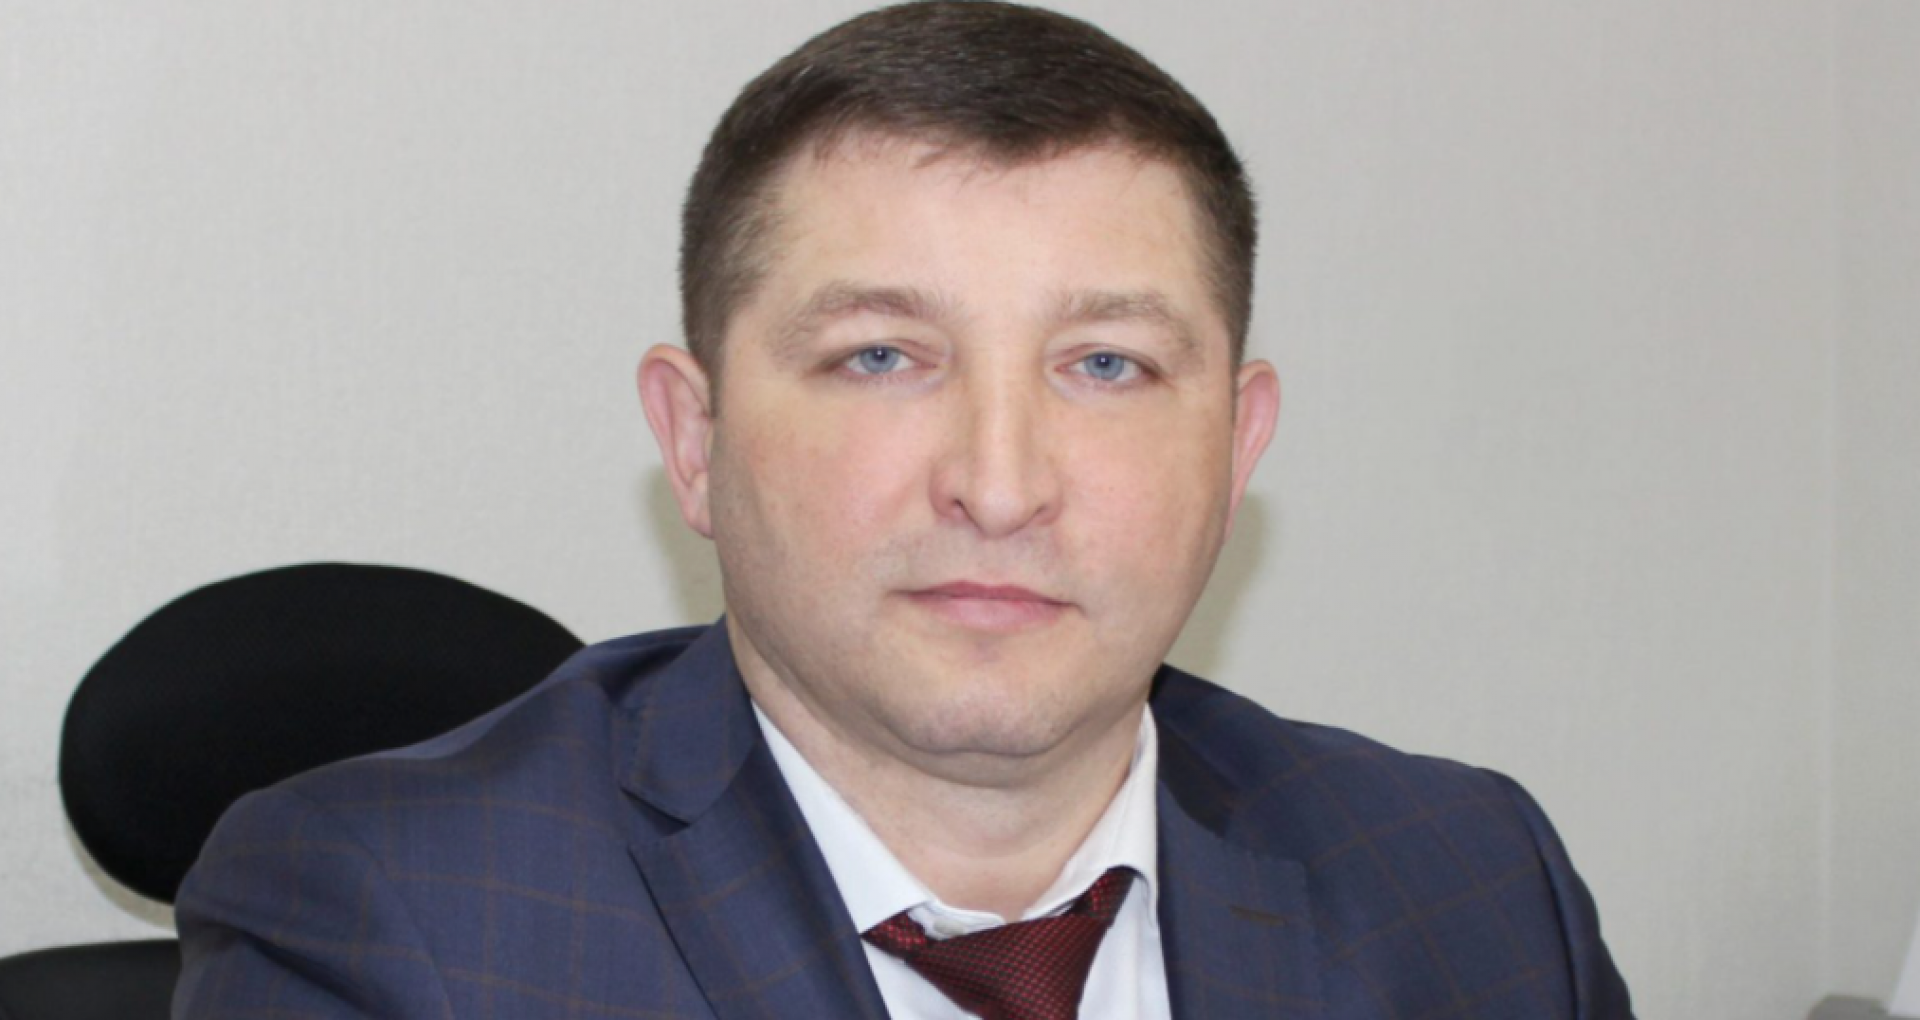 Procurorii au solicitat prelungirea arestului preventiv pentru Ruslan Popov: magistrații Judecătoriei Chișinău urmează să decidă astăzi